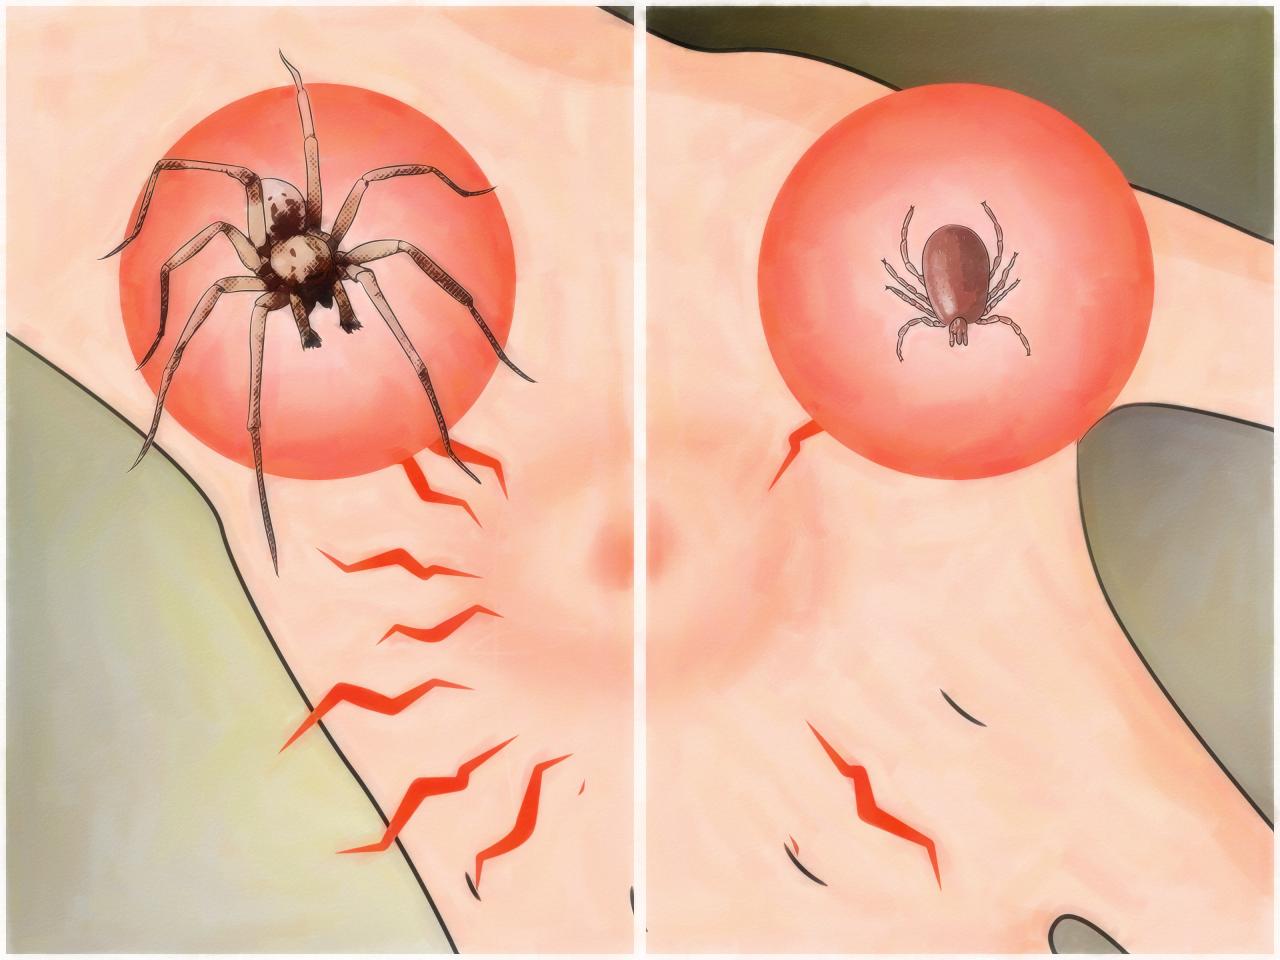 اعراض الانسان العنكبوت عند لدغة لدغه يصيب